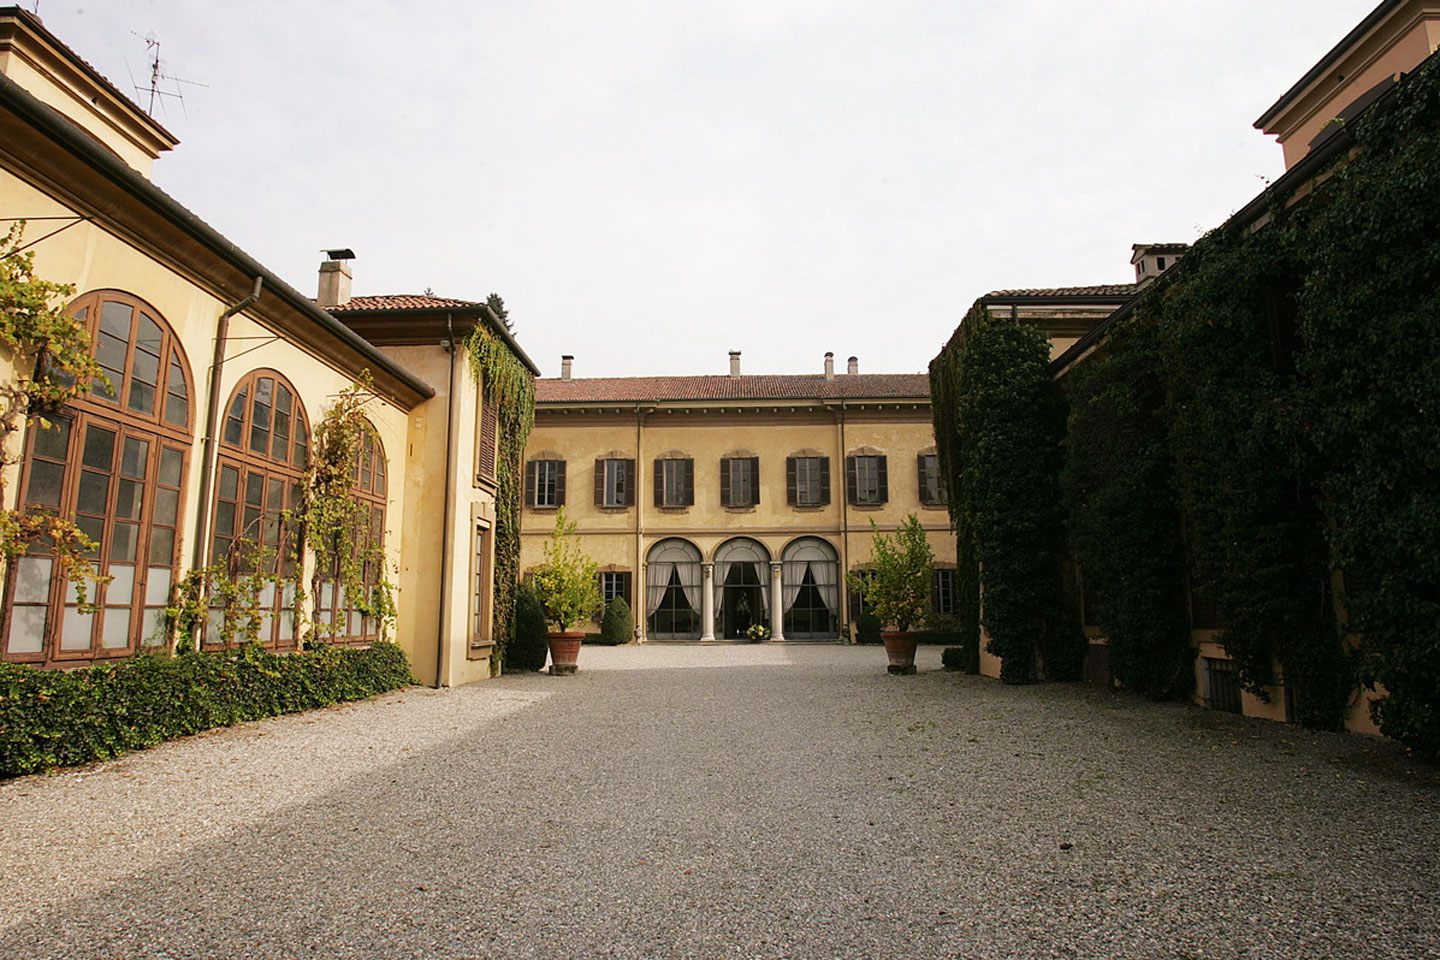 Villa Taverna, location per matrimoni in Monza e Brianza - Ingresso della Villa